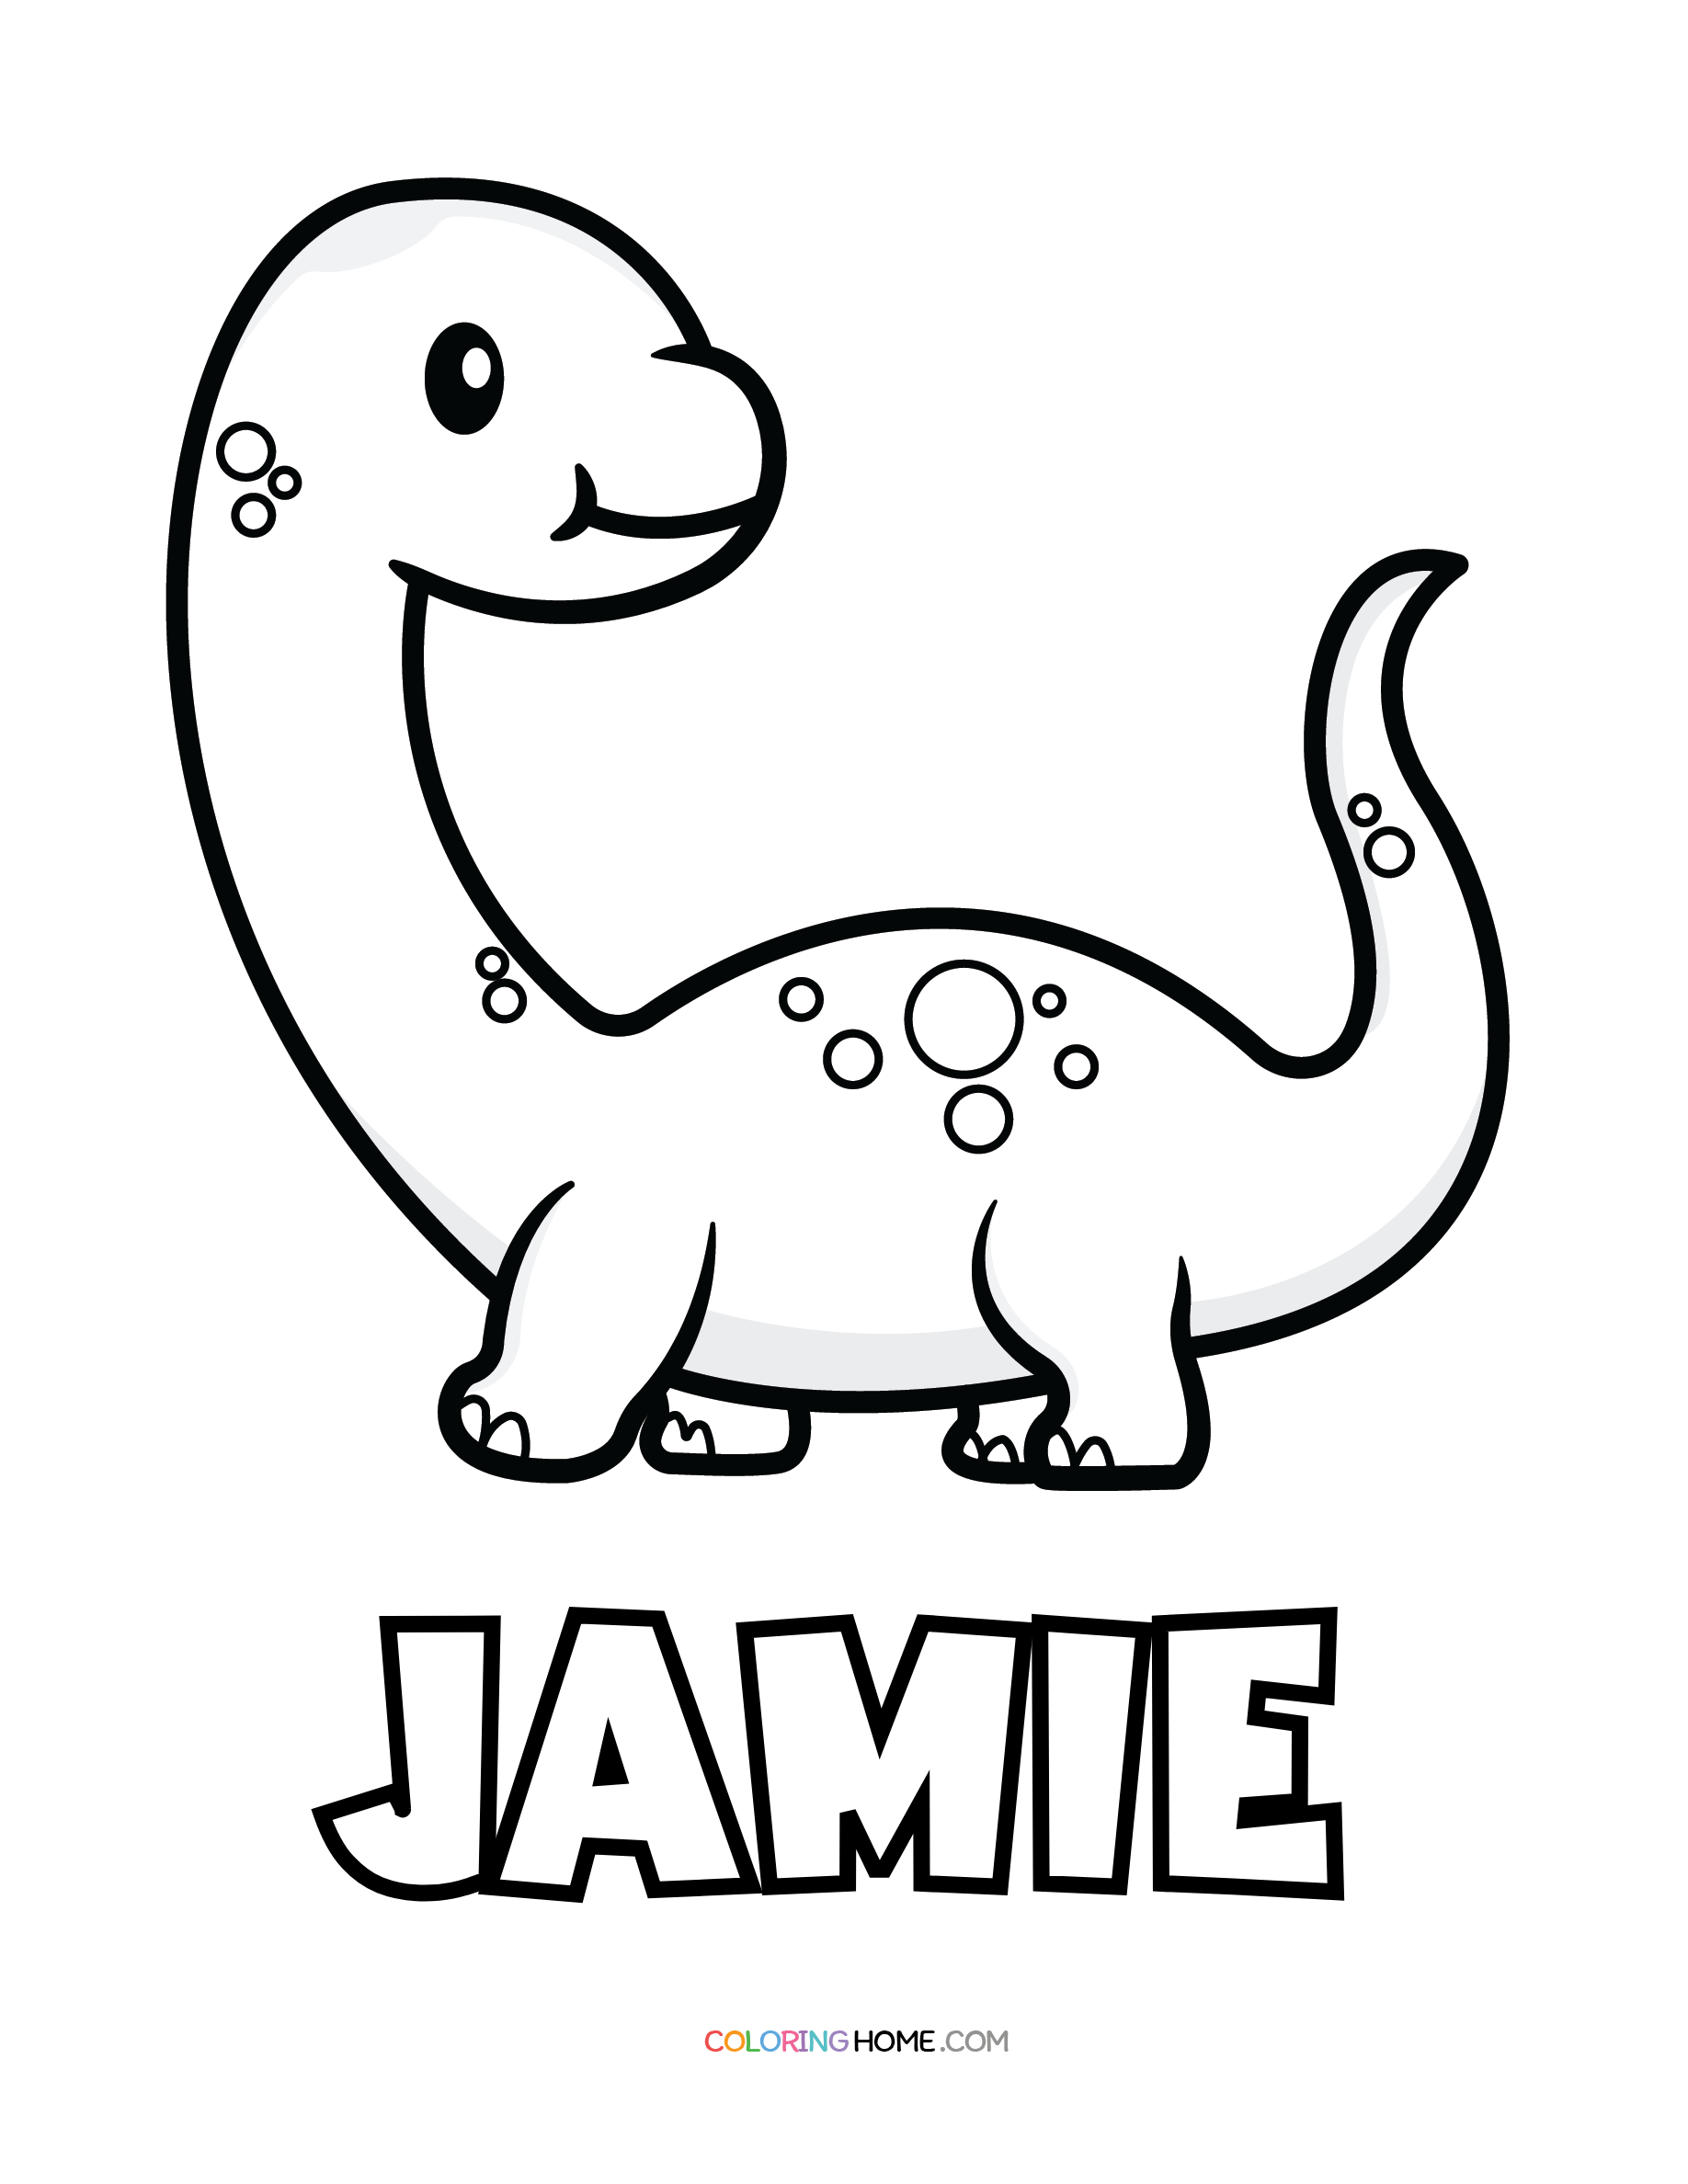 Jamie dinosaur coloring page